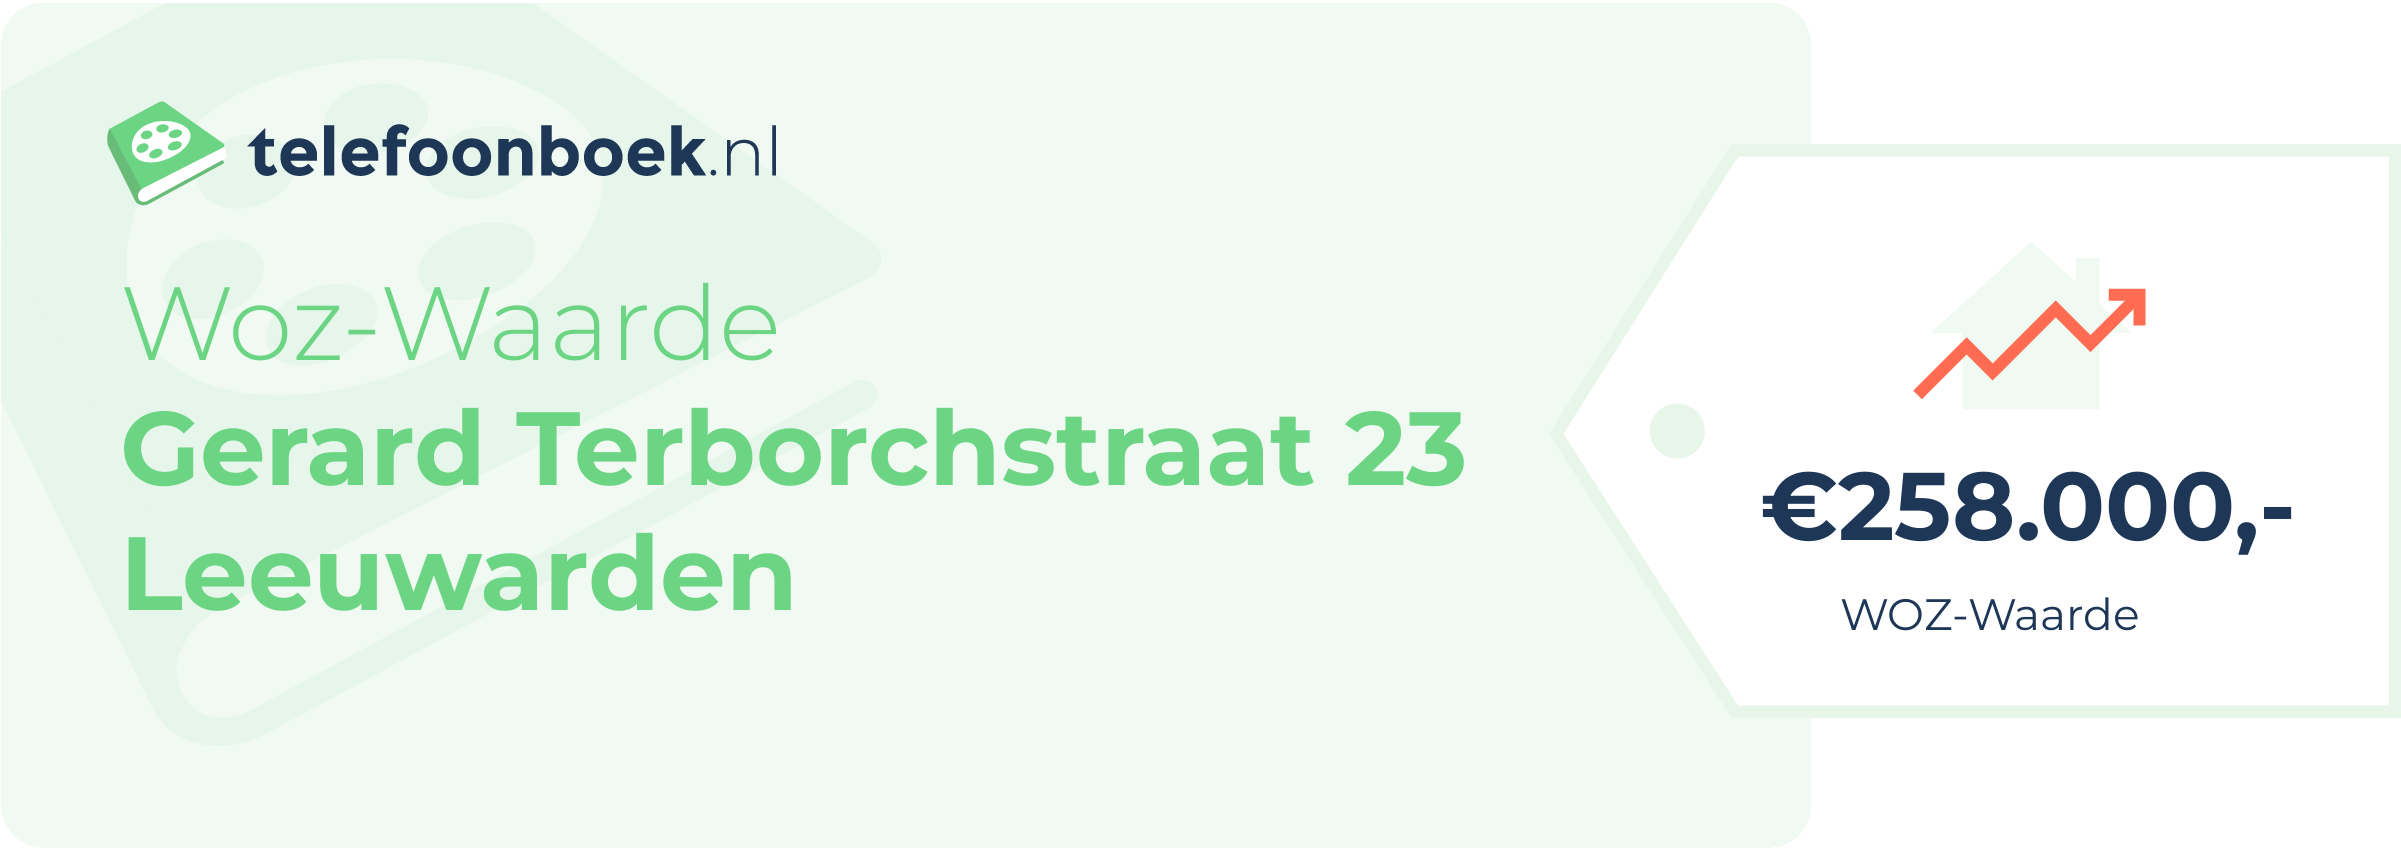 WOZ-waarde Gerard Terborchstraat 23 Leeuwarden